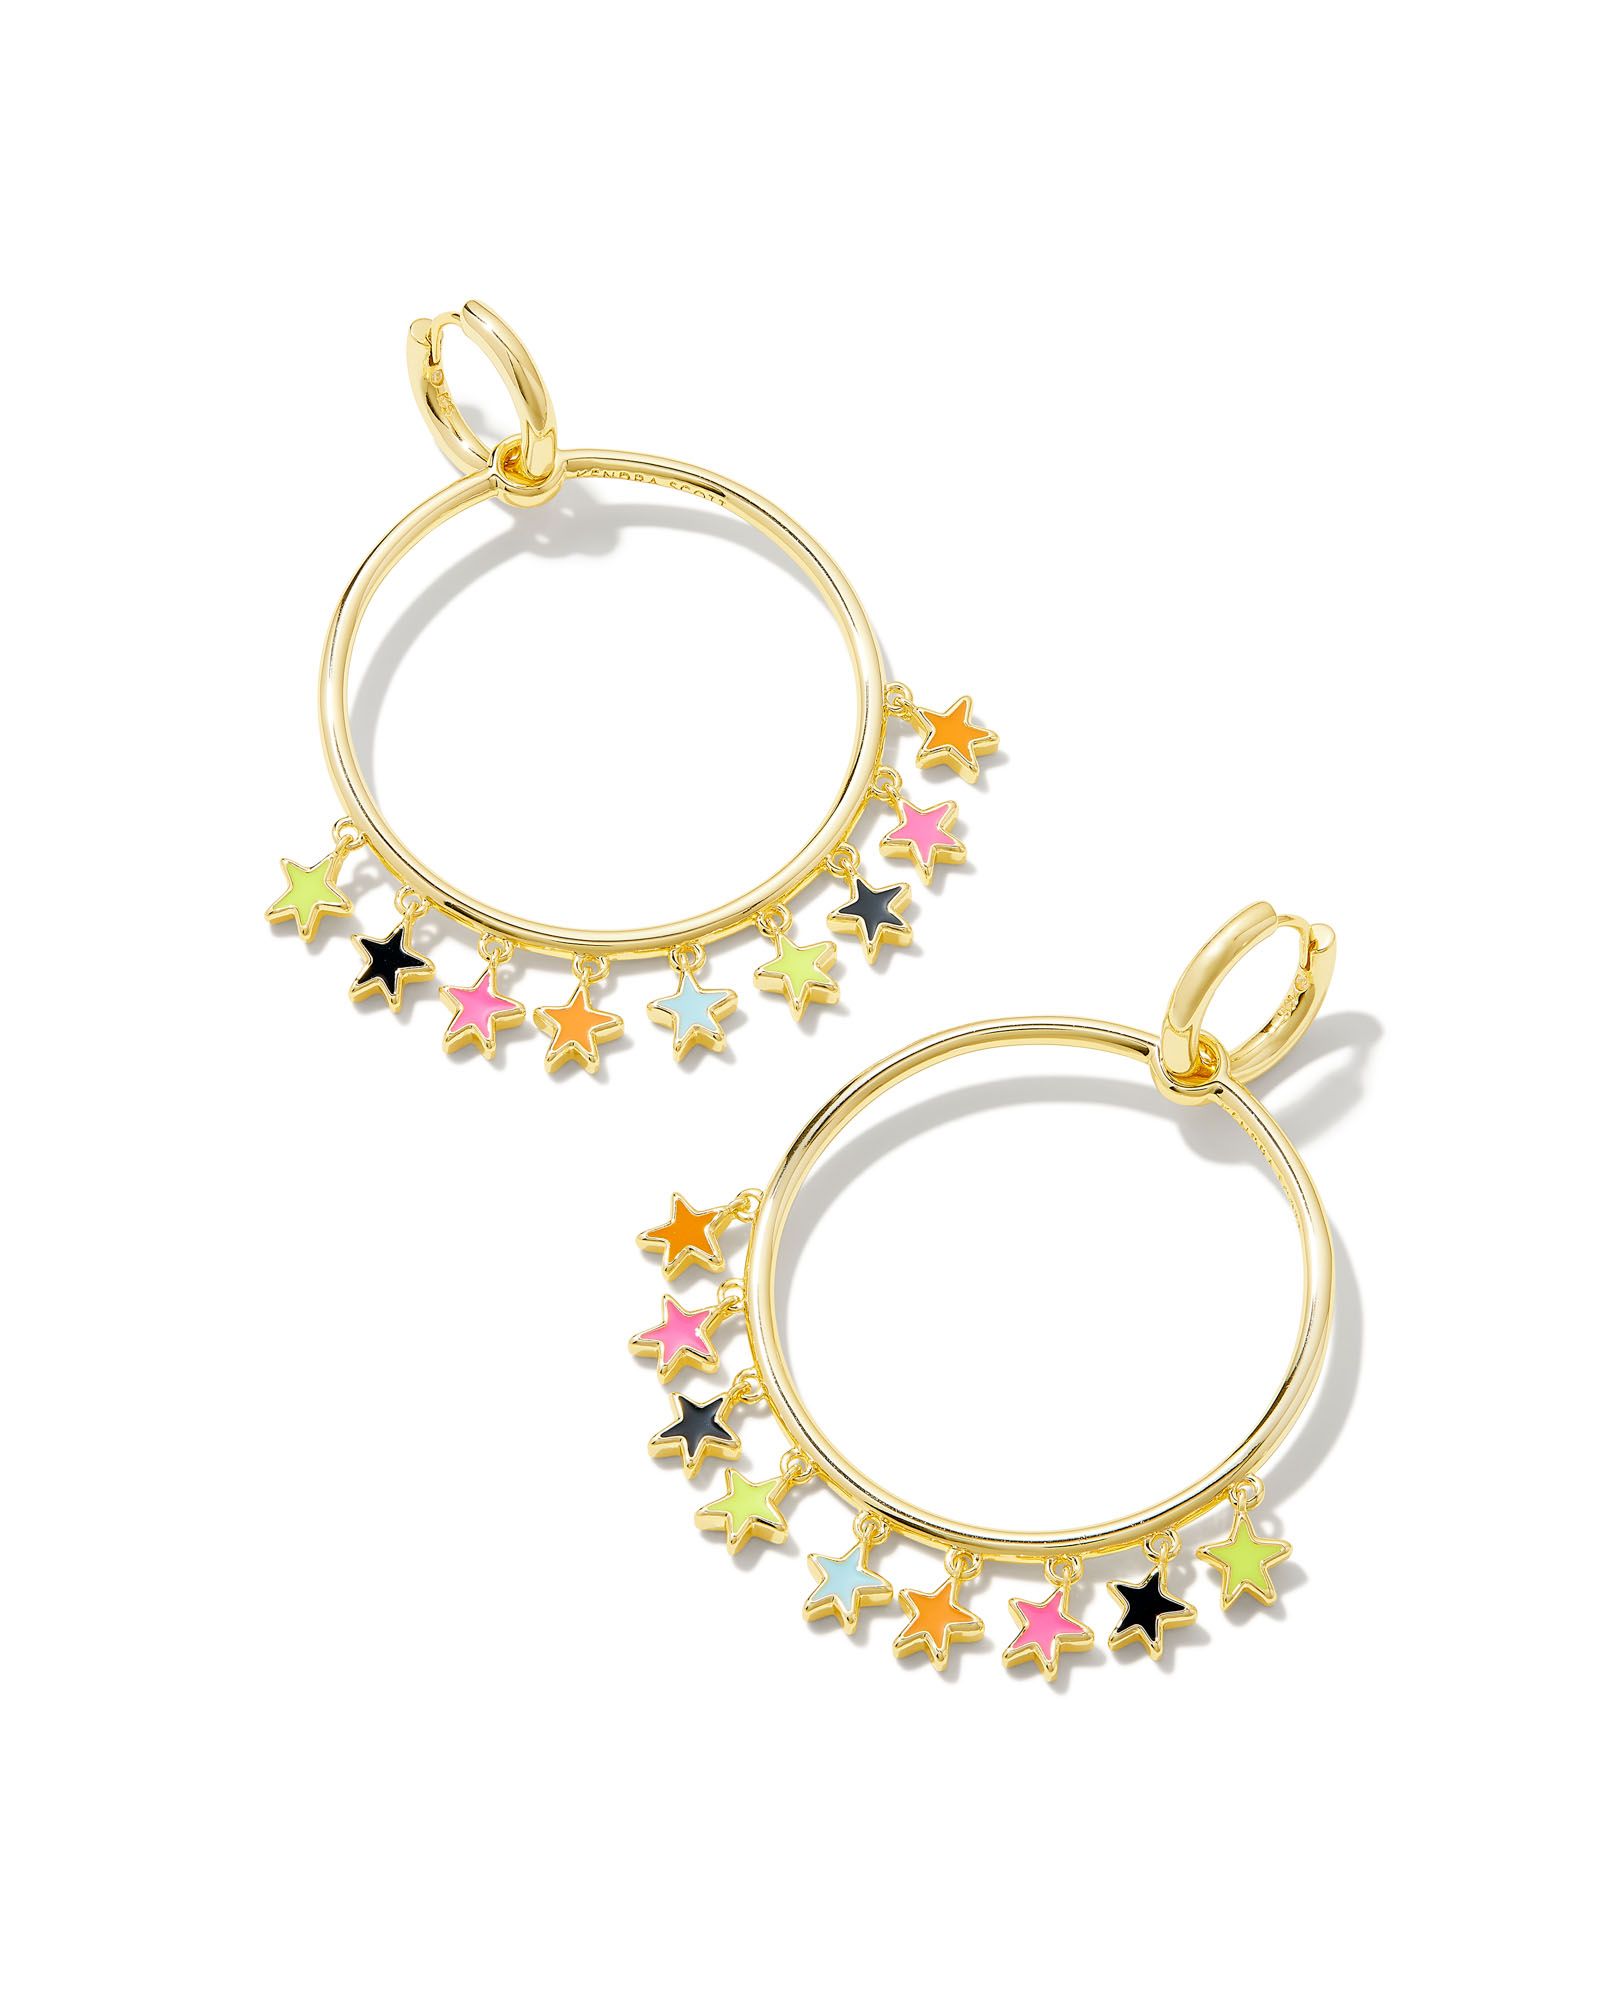 Sloane Gold Star Convertible Open Frame Earrings in Multi Mix | Kendra Scott | Kendra Scott